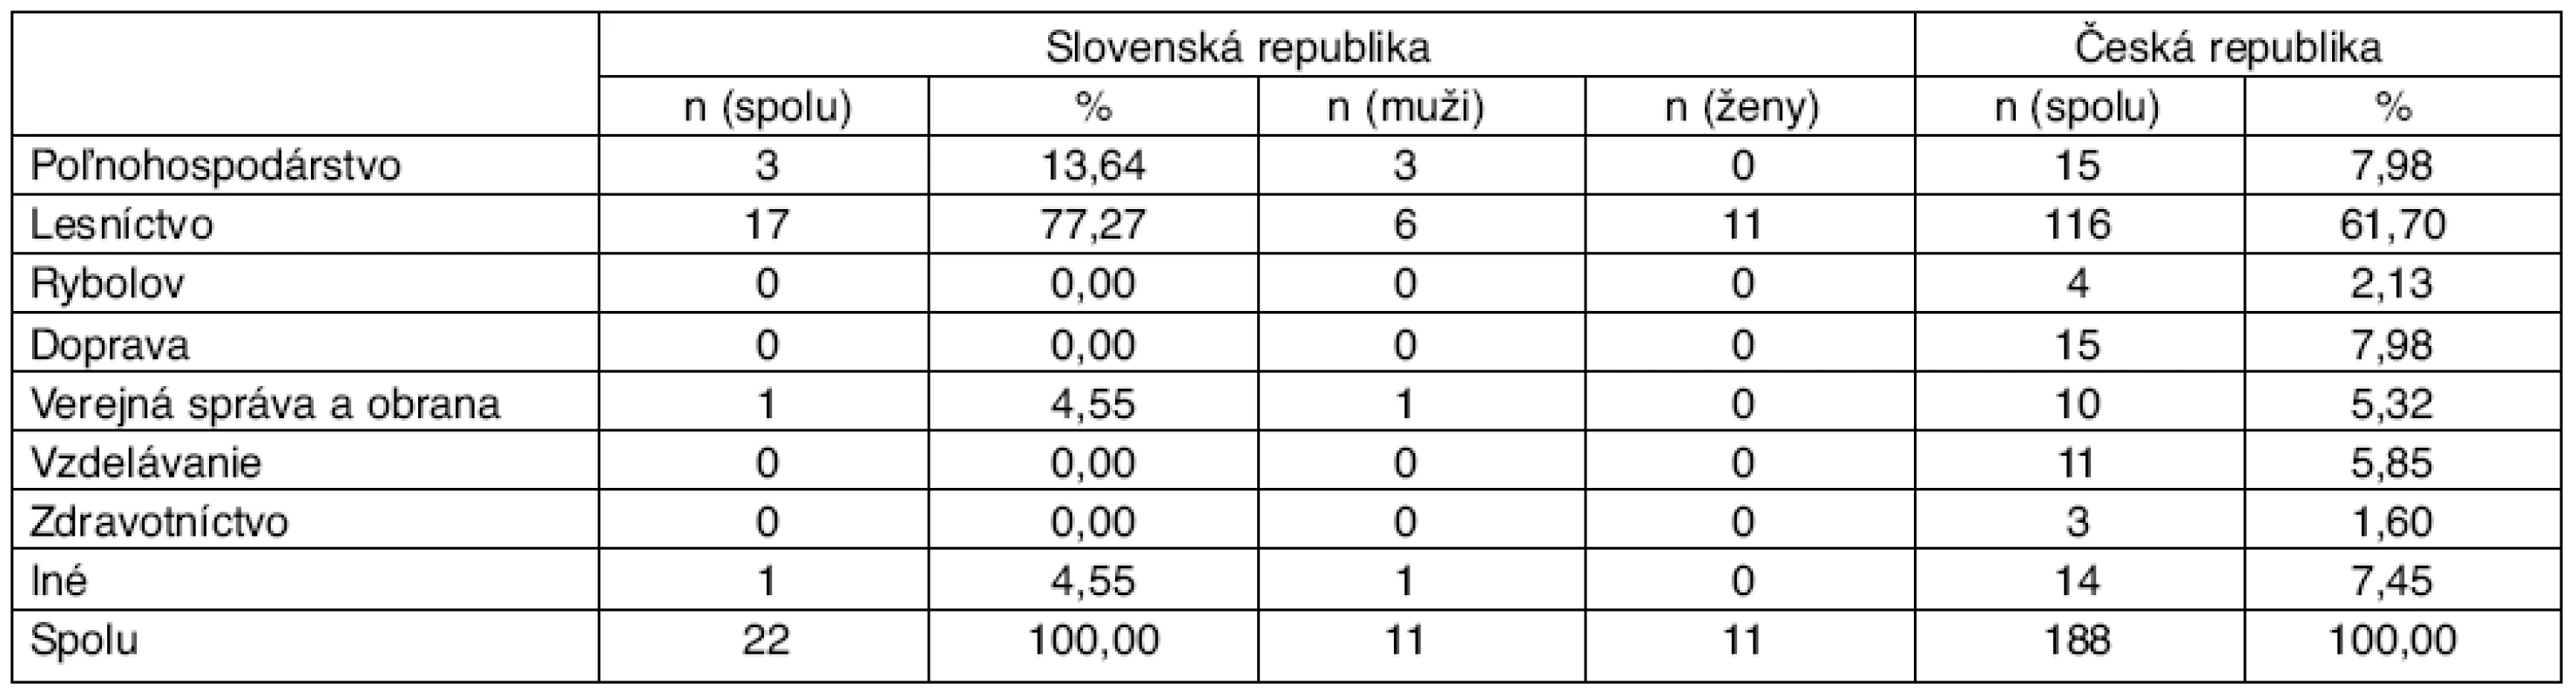 Počet hlásených chorôb z povolania dg. A84 podľa povolaní, Česká republika a Slovenská republika, r. 1989–2008